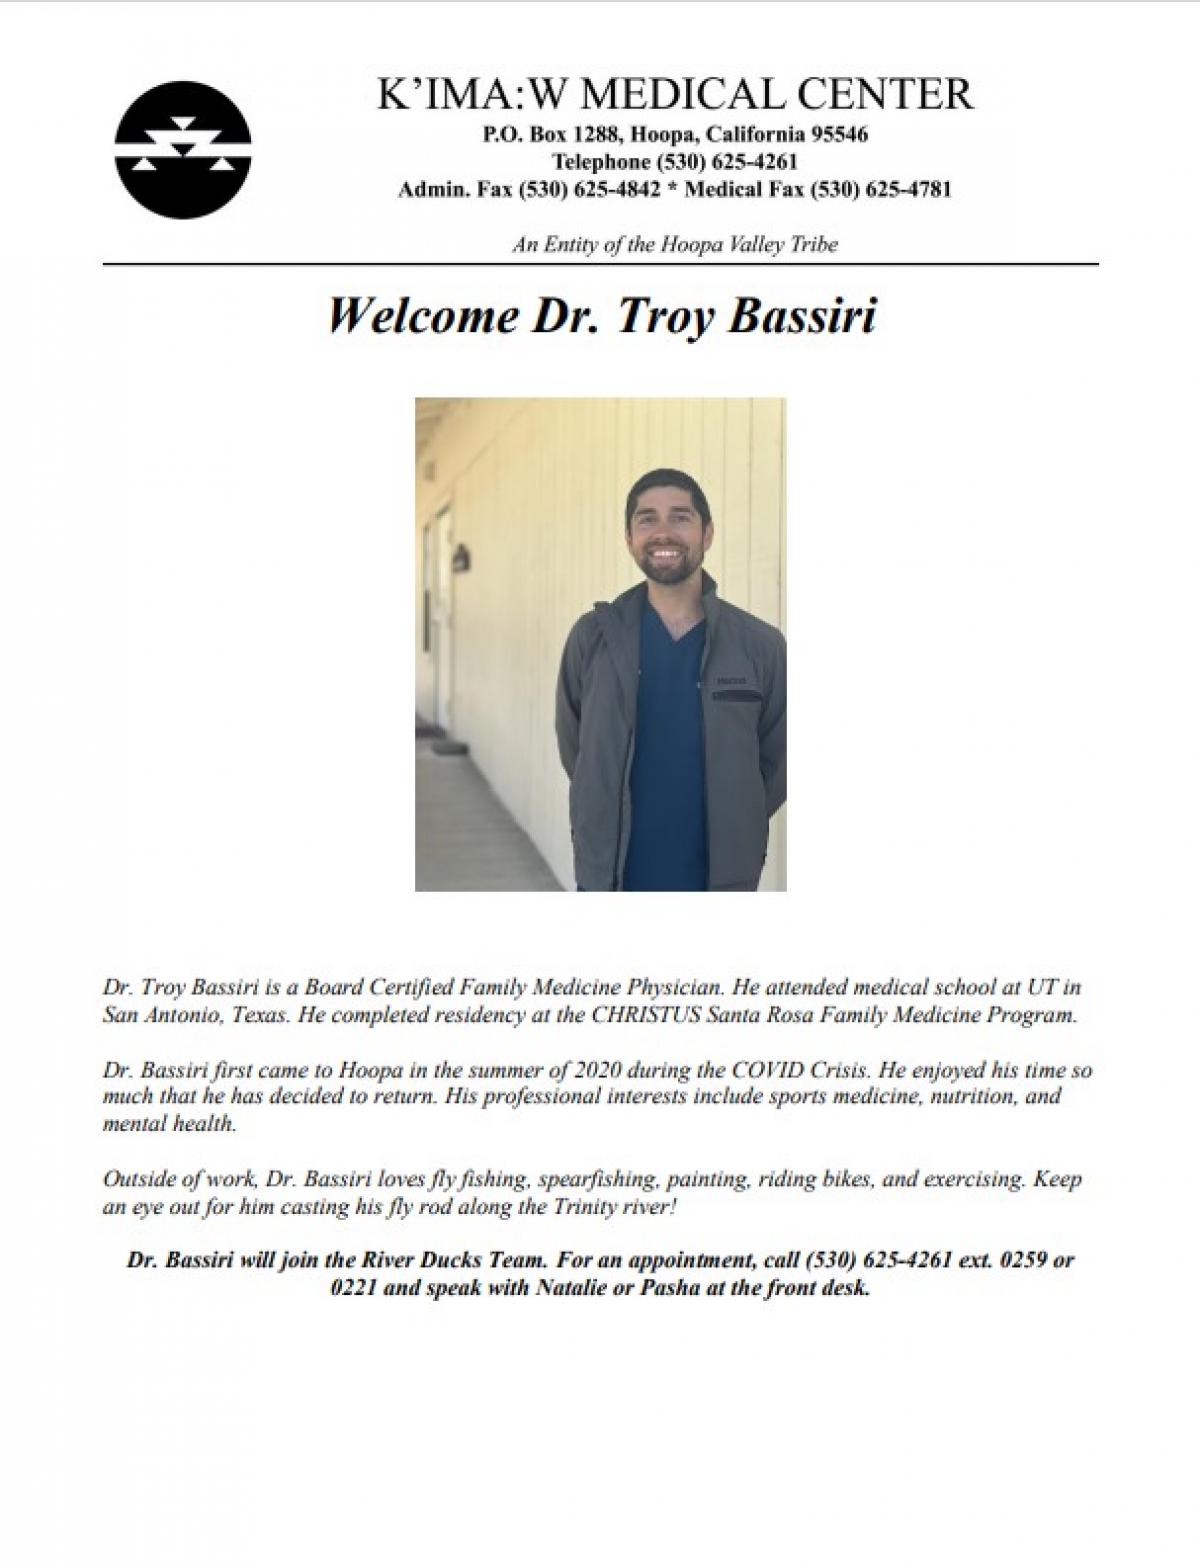 Dr. Troy Bassiri